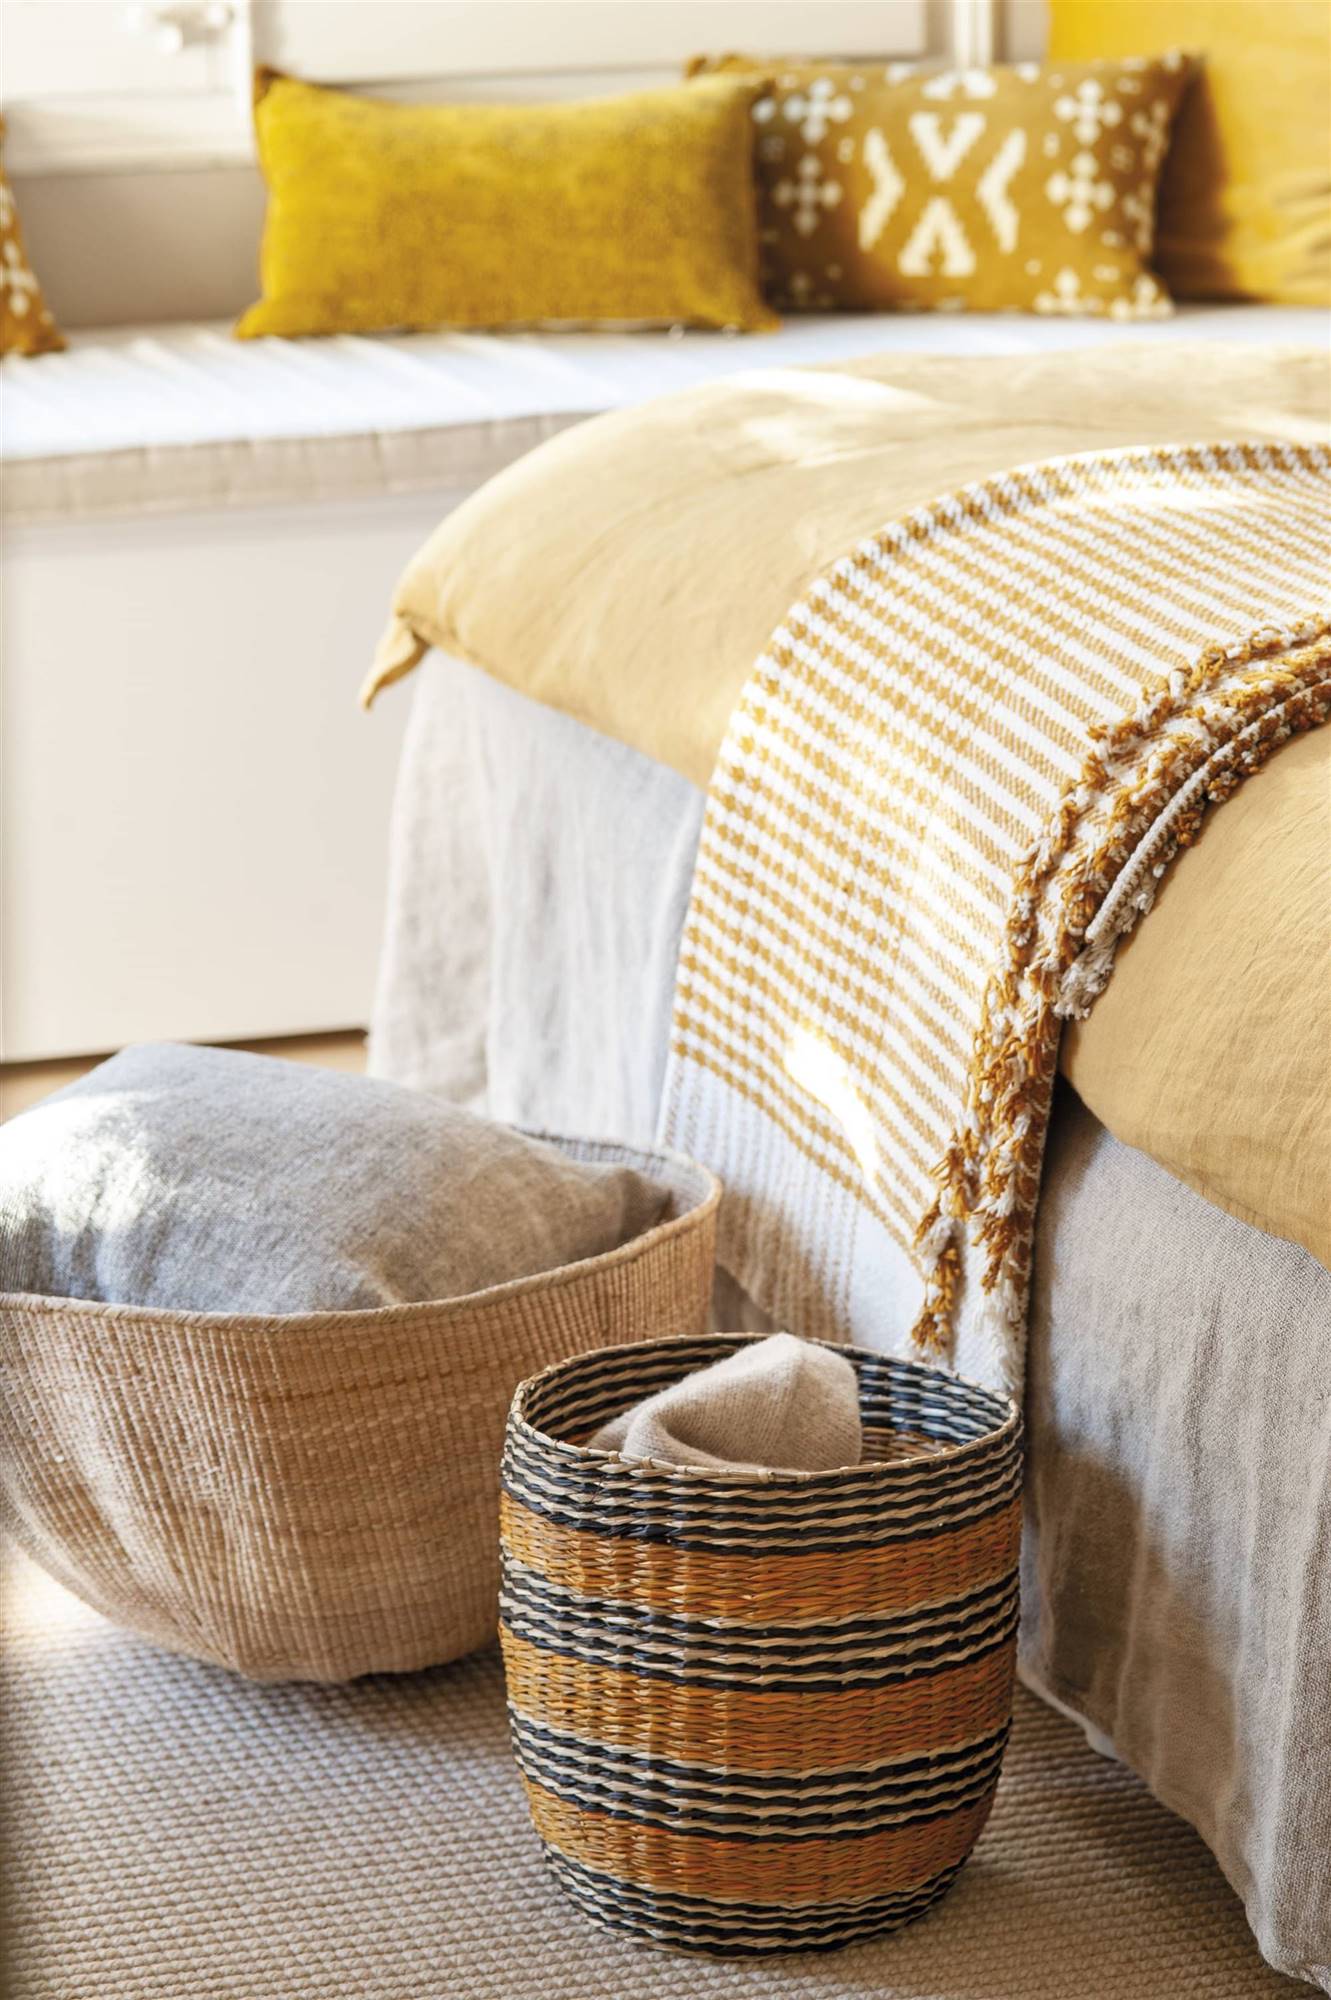 Detalle de pie de cama con cestos de fibras naturales. 